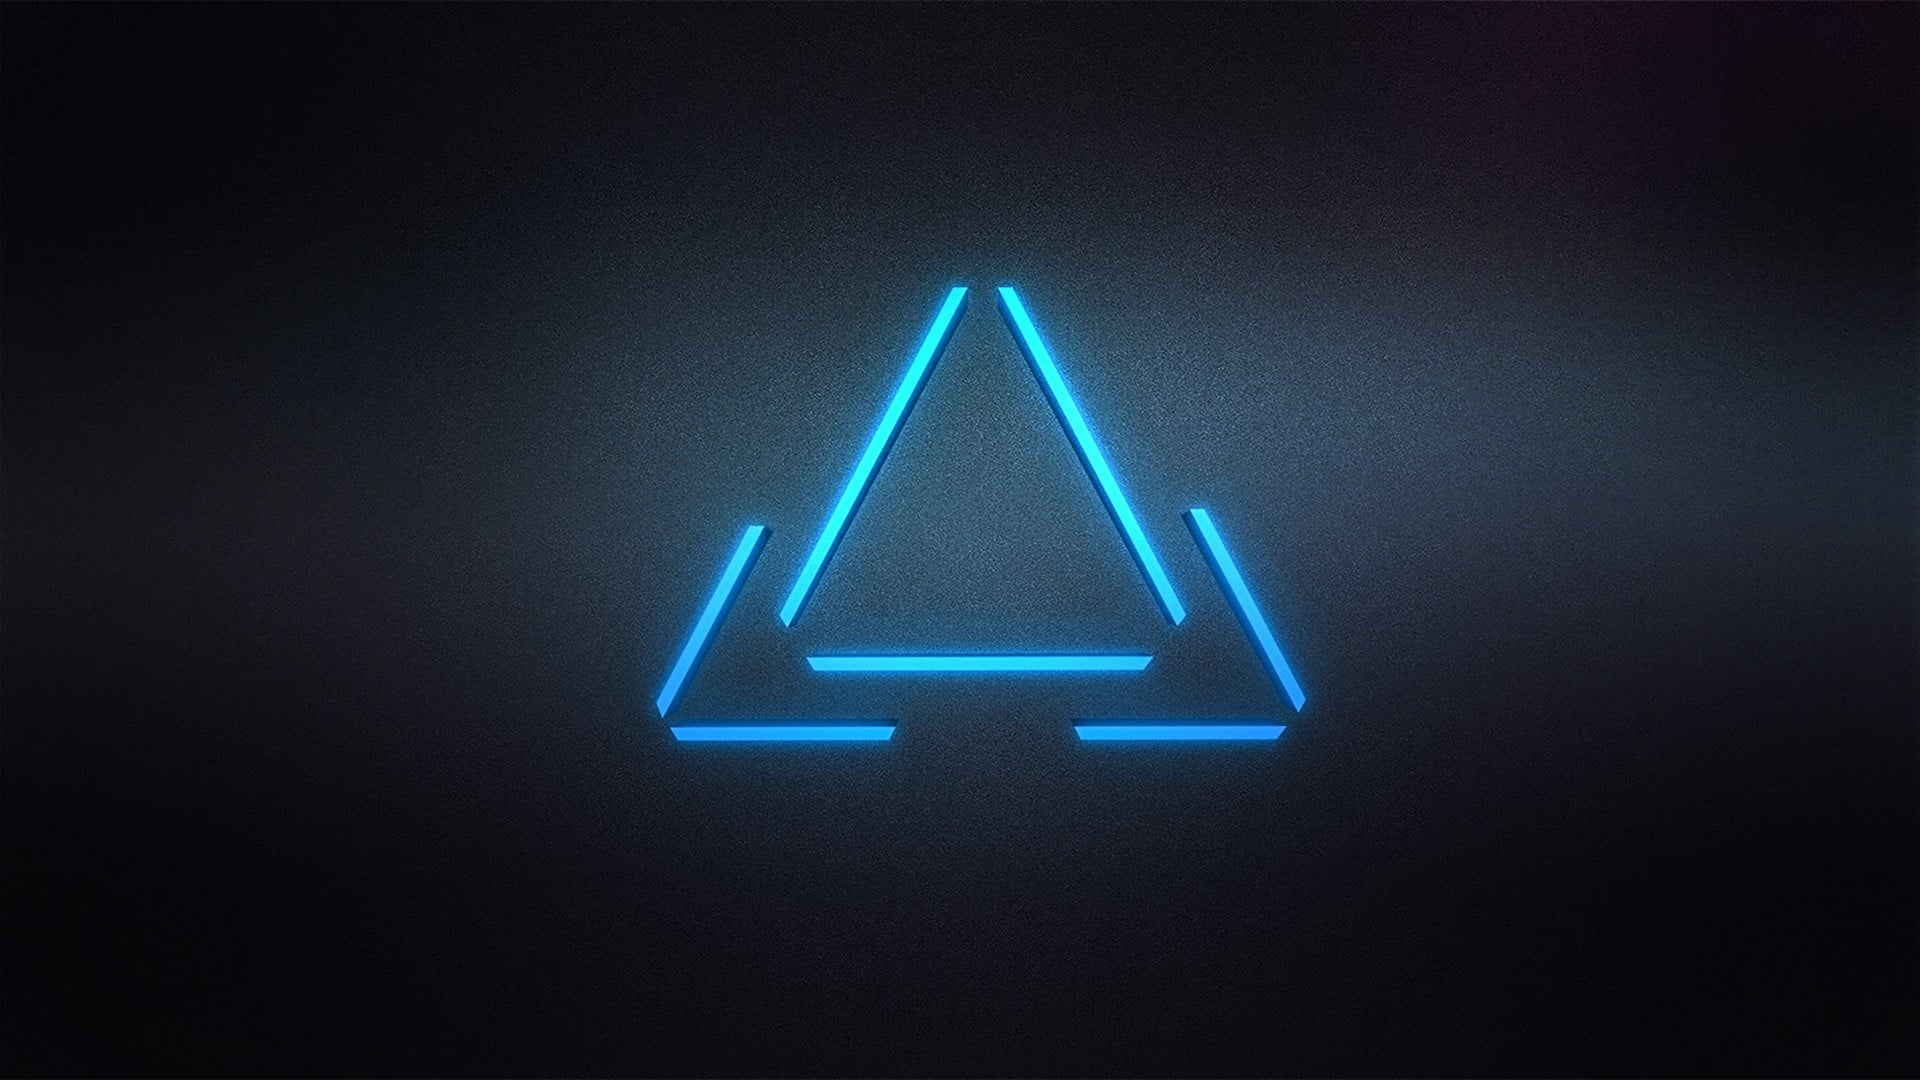 Blue triangle logo, triangle, digital art, minimalism HD wallpaper